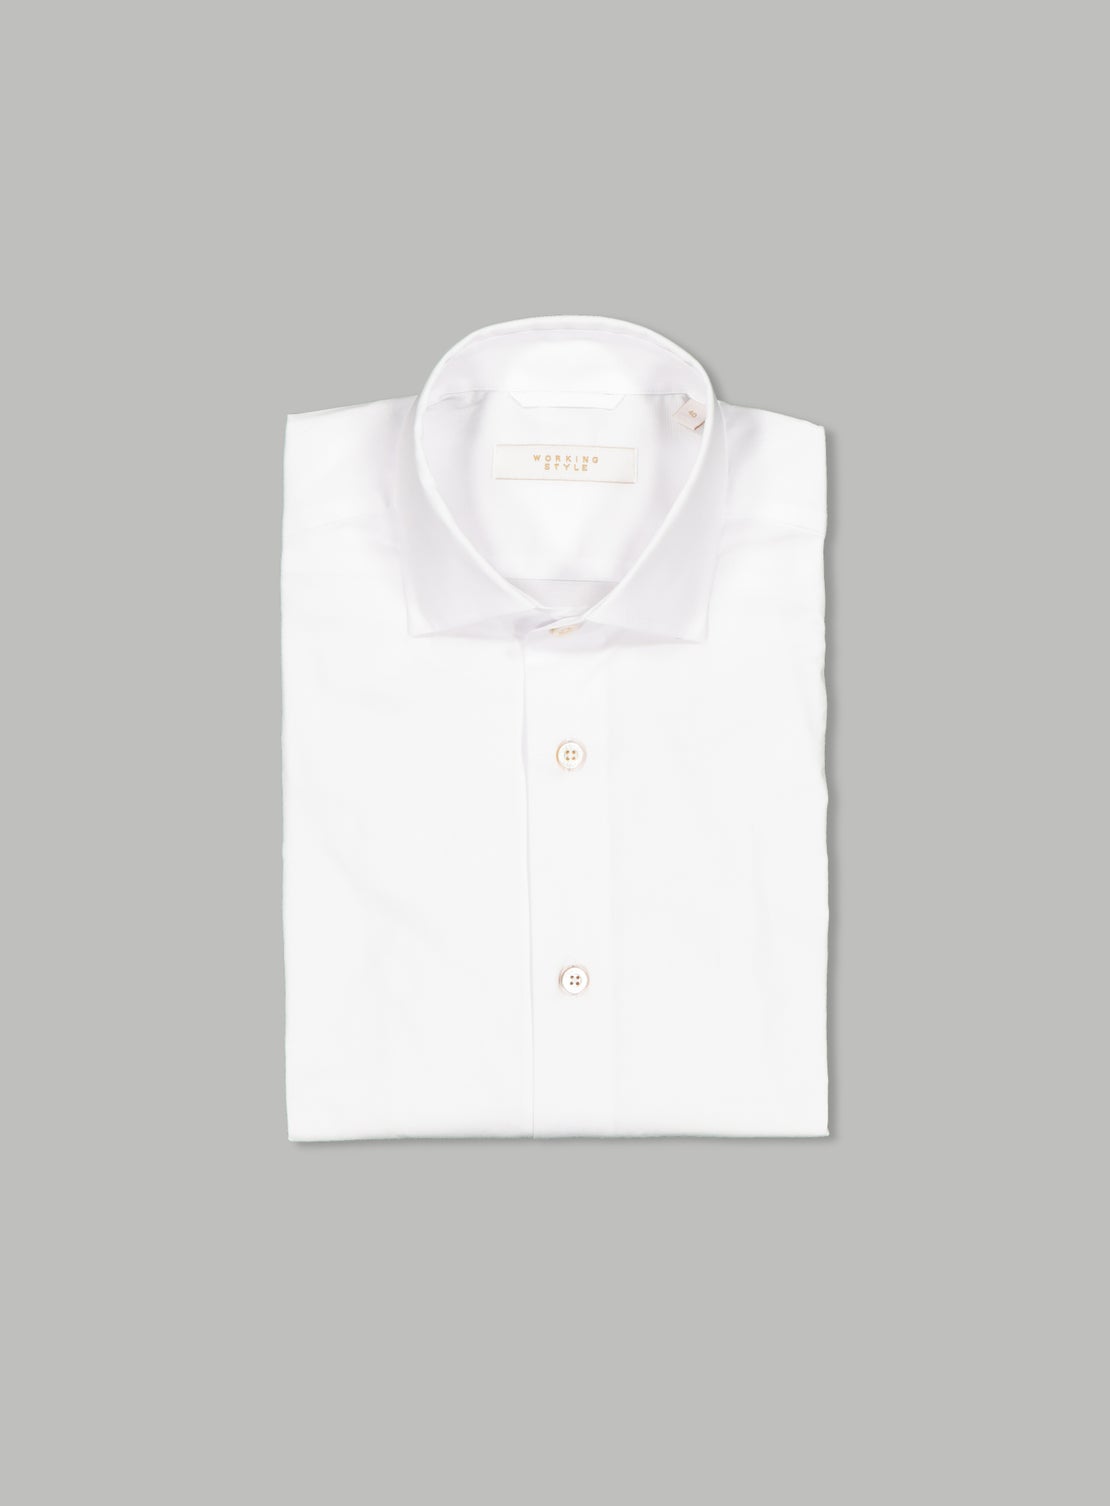 Giuseppe White Poplin Shirt